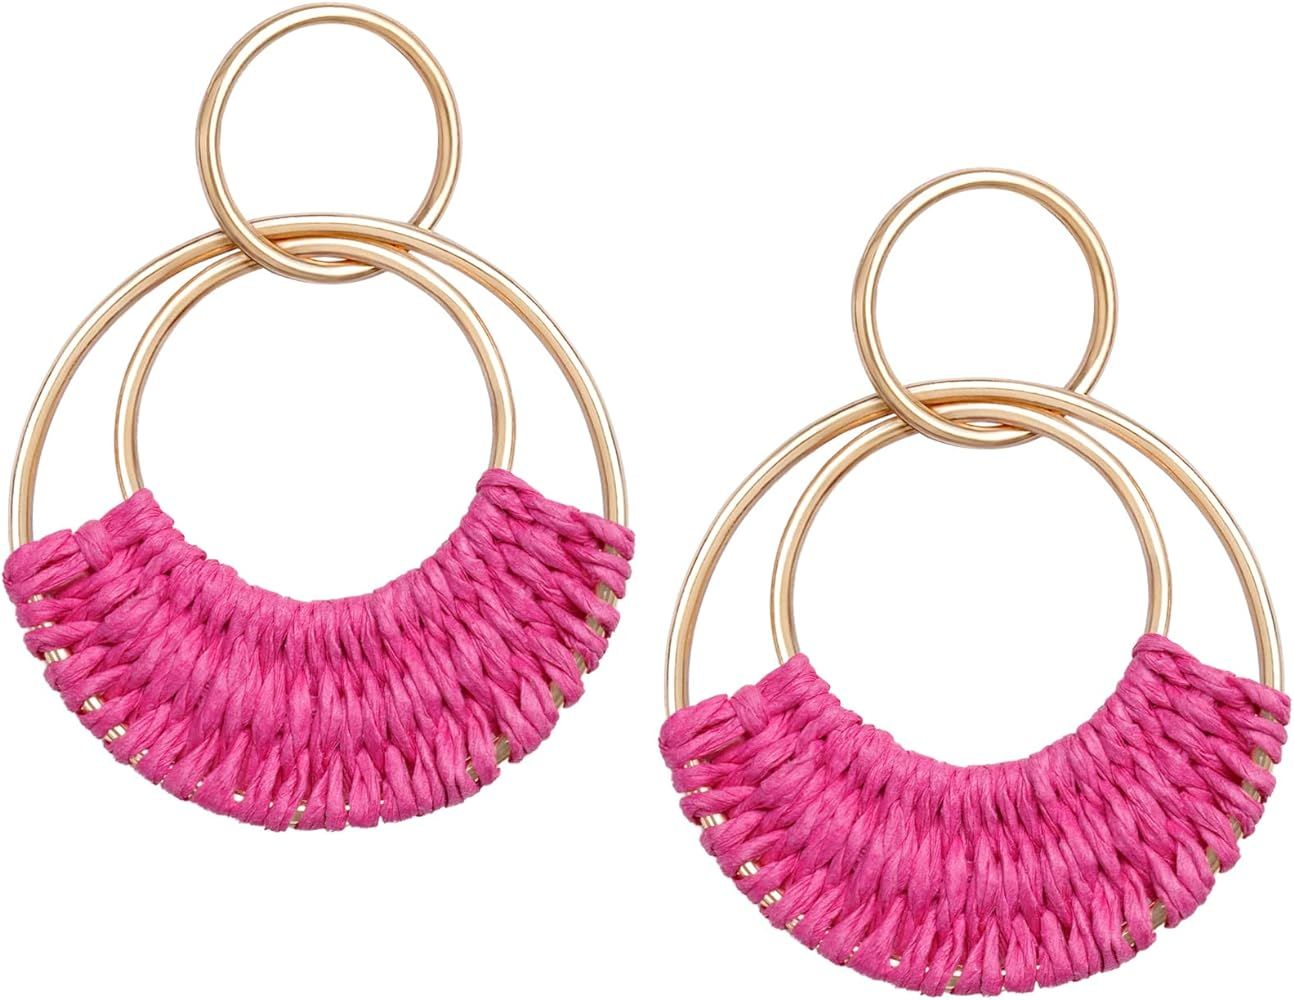 SELFWIMG Raffia Hoop Earrings for Women Girls Fun Boho Summer Beach Earrings Lightweight Handmade Straw Wicker Rattan Dangle Earrings Statement Geometric Round Drop Earrings | Amazon (US)